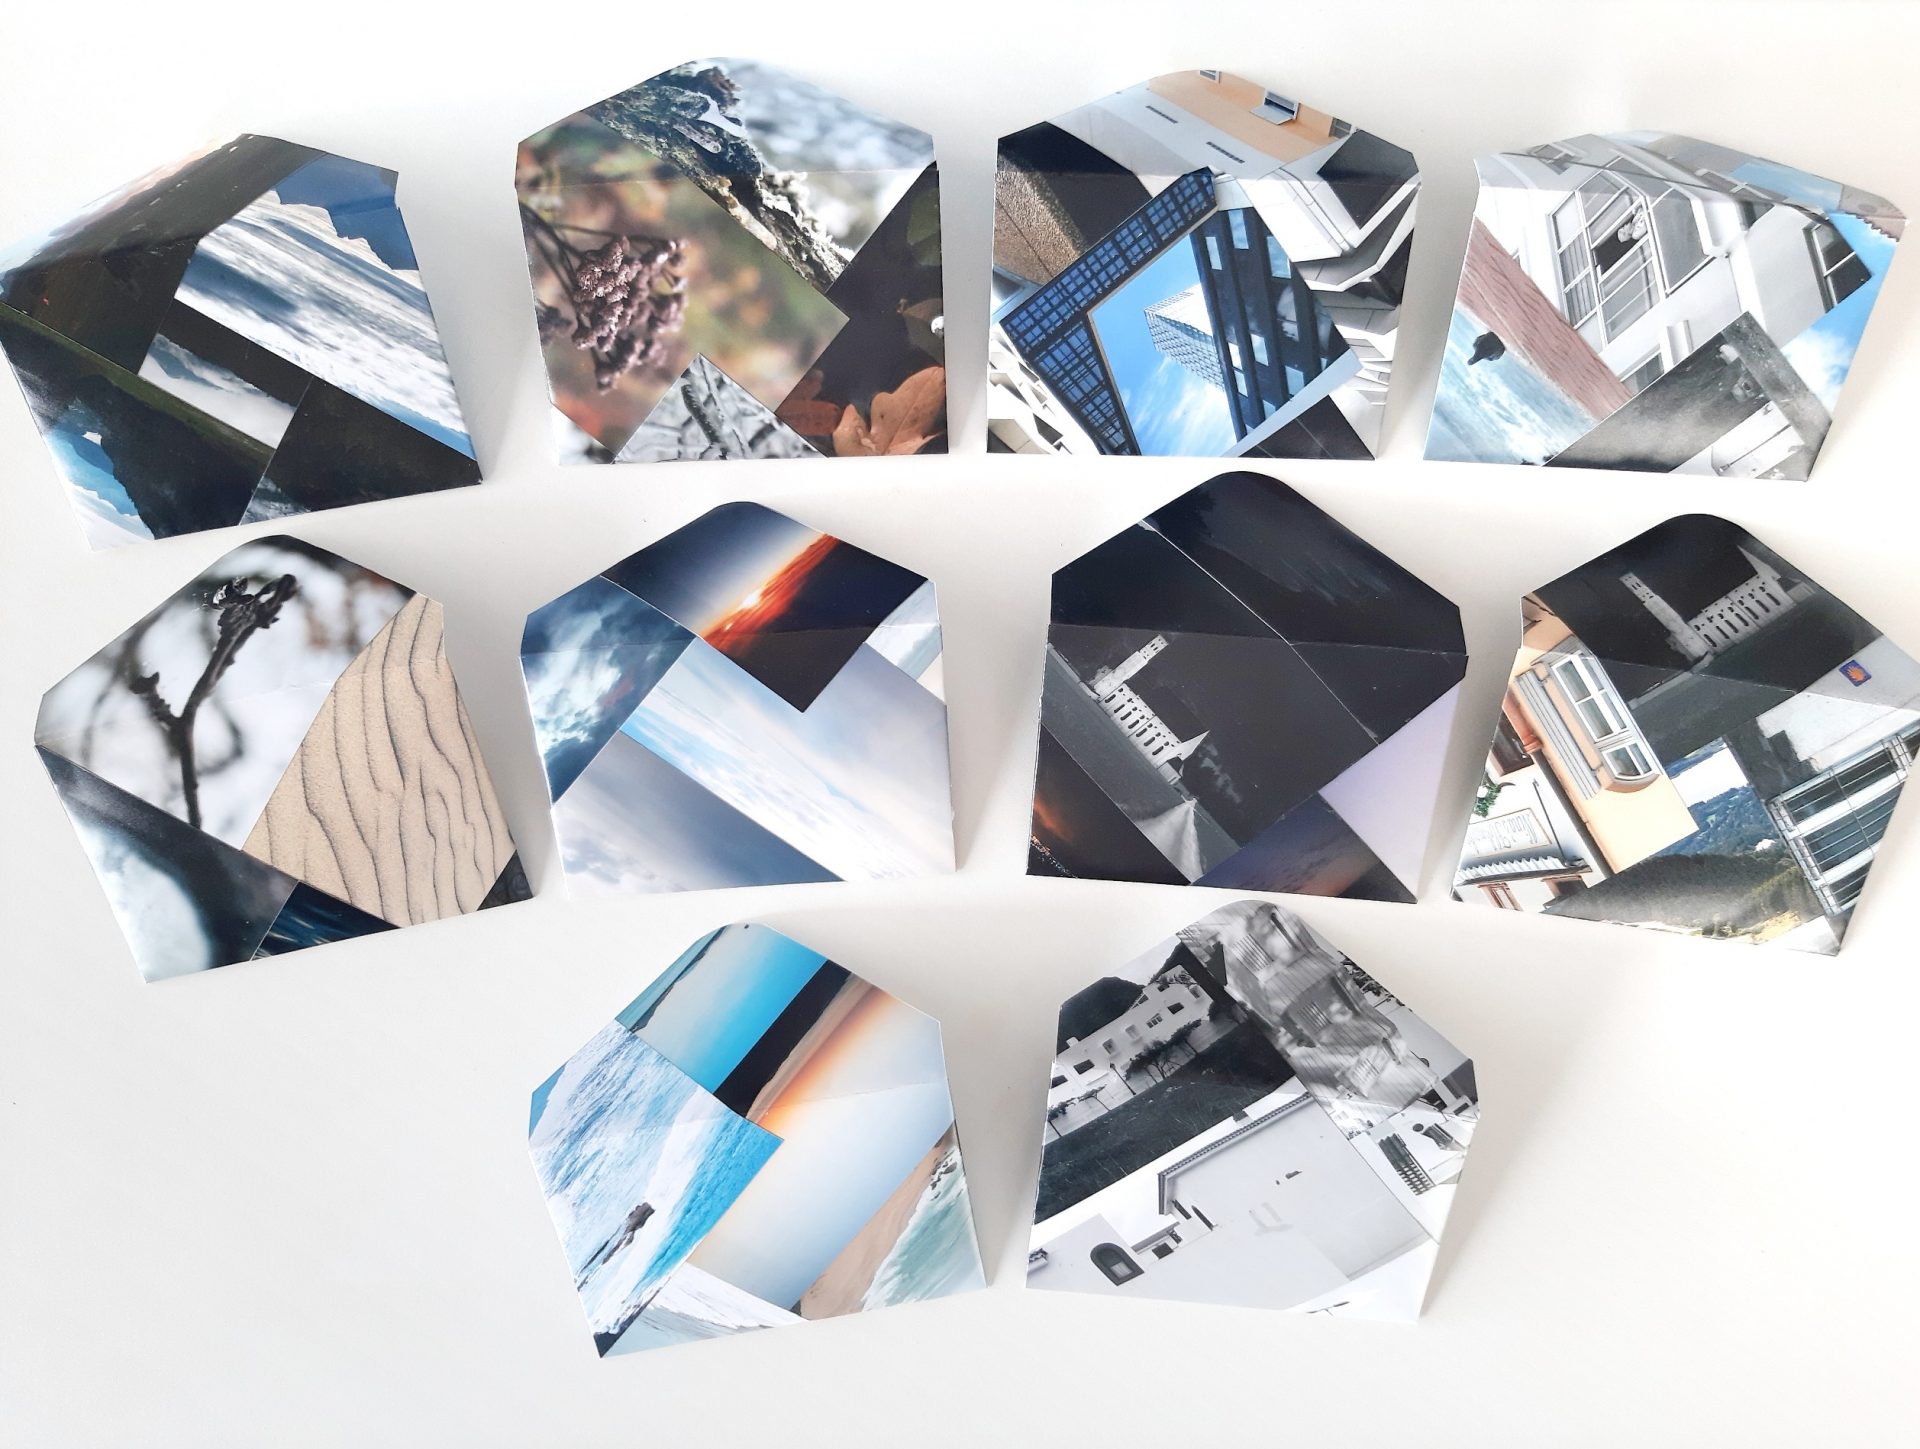 10 sobres hechos con fotos desechadas recicladas, vistas desde atrás